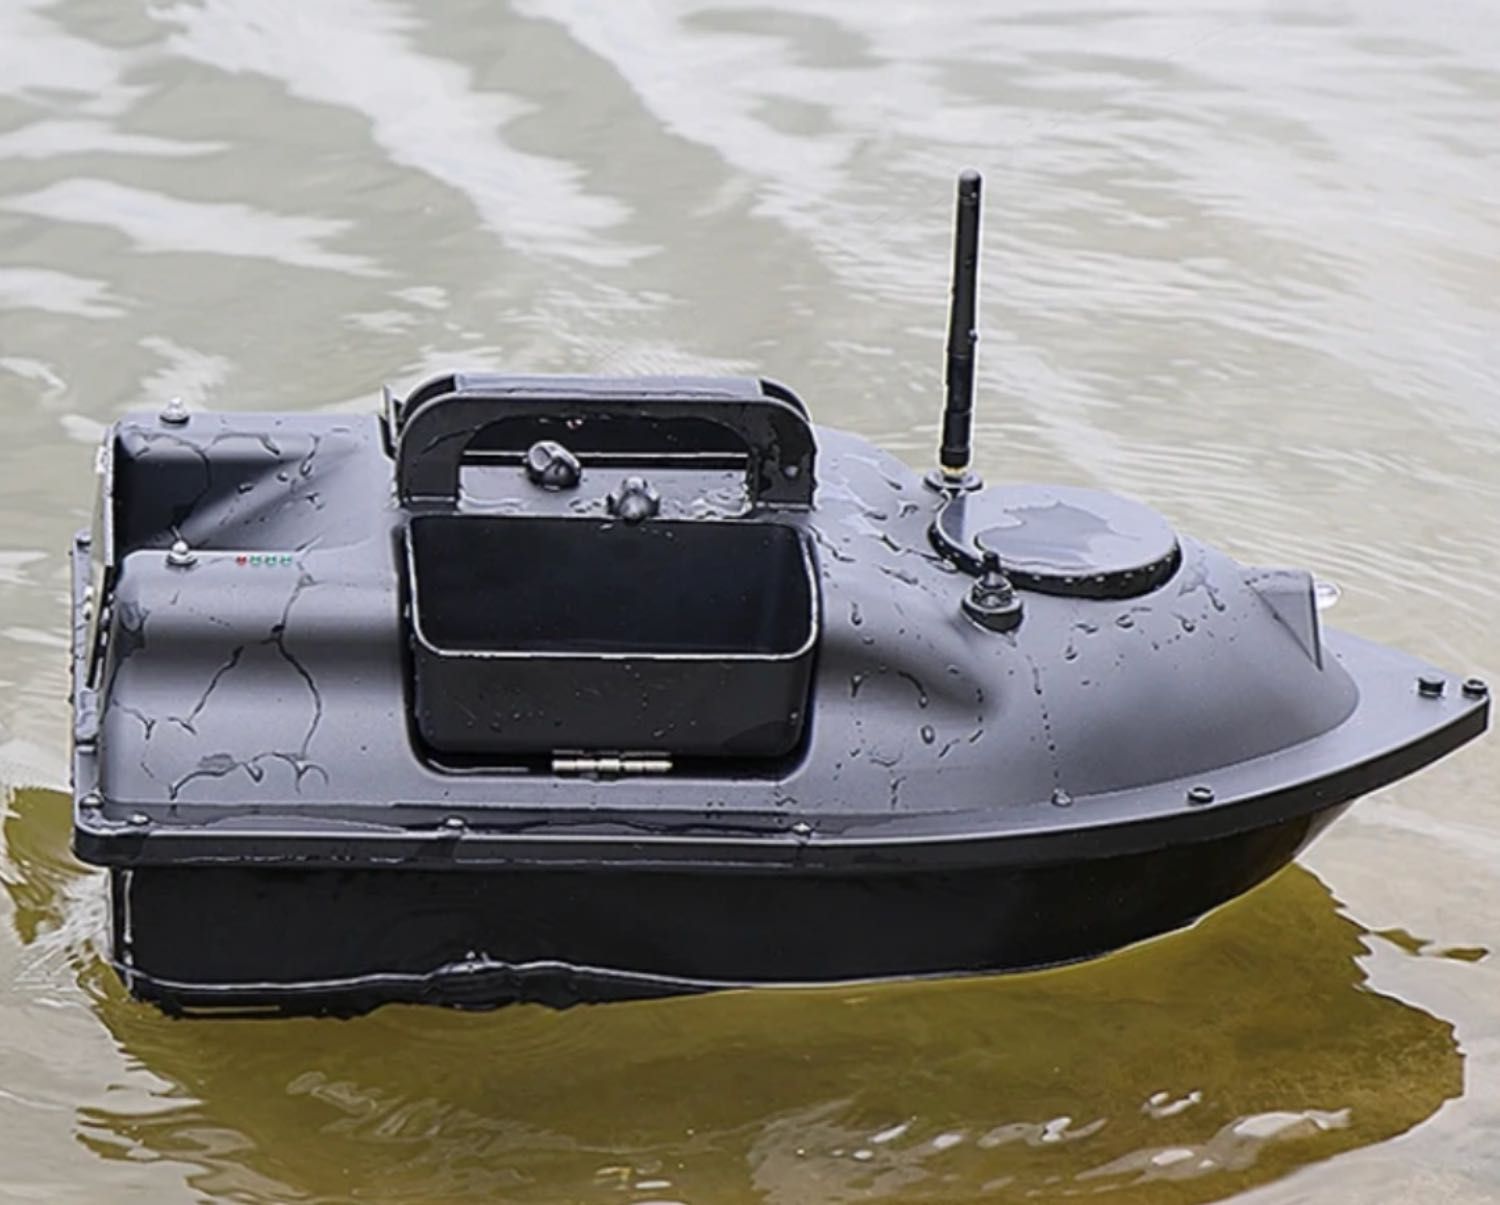 ŁÓDŹ Łódka ZANĘTOWA Jezioro Staw GPS 500m 3pojemniki Wędkarska prezent